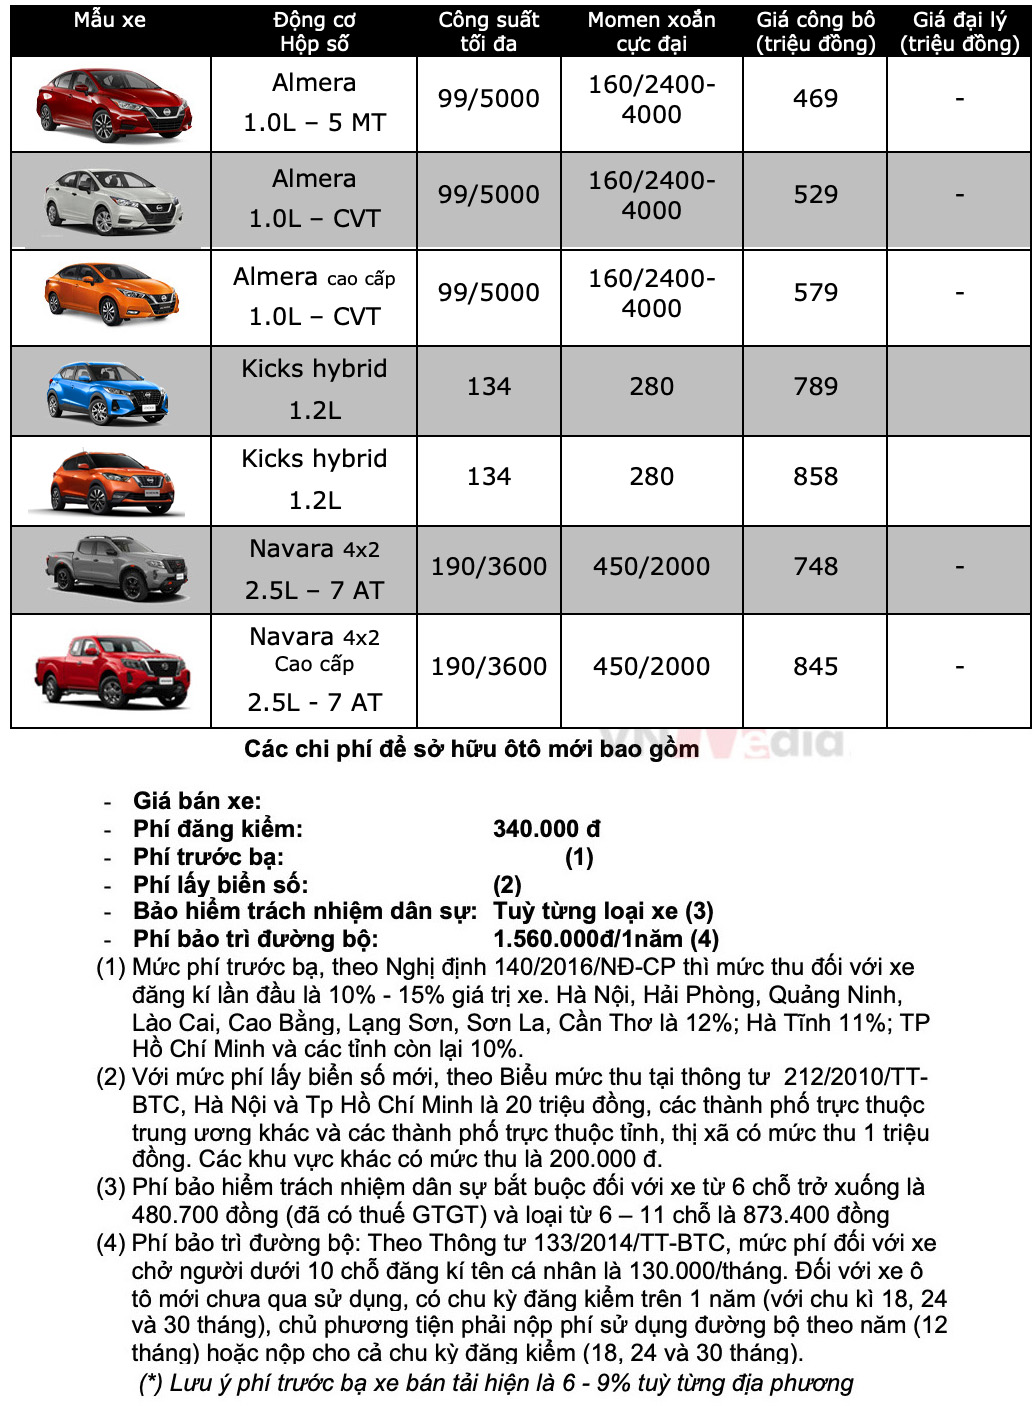 Bảng giá xe Nissan tháng 11: Nissan Navara được ưu đãi lệ phí trước bạ - Ảnh 2.